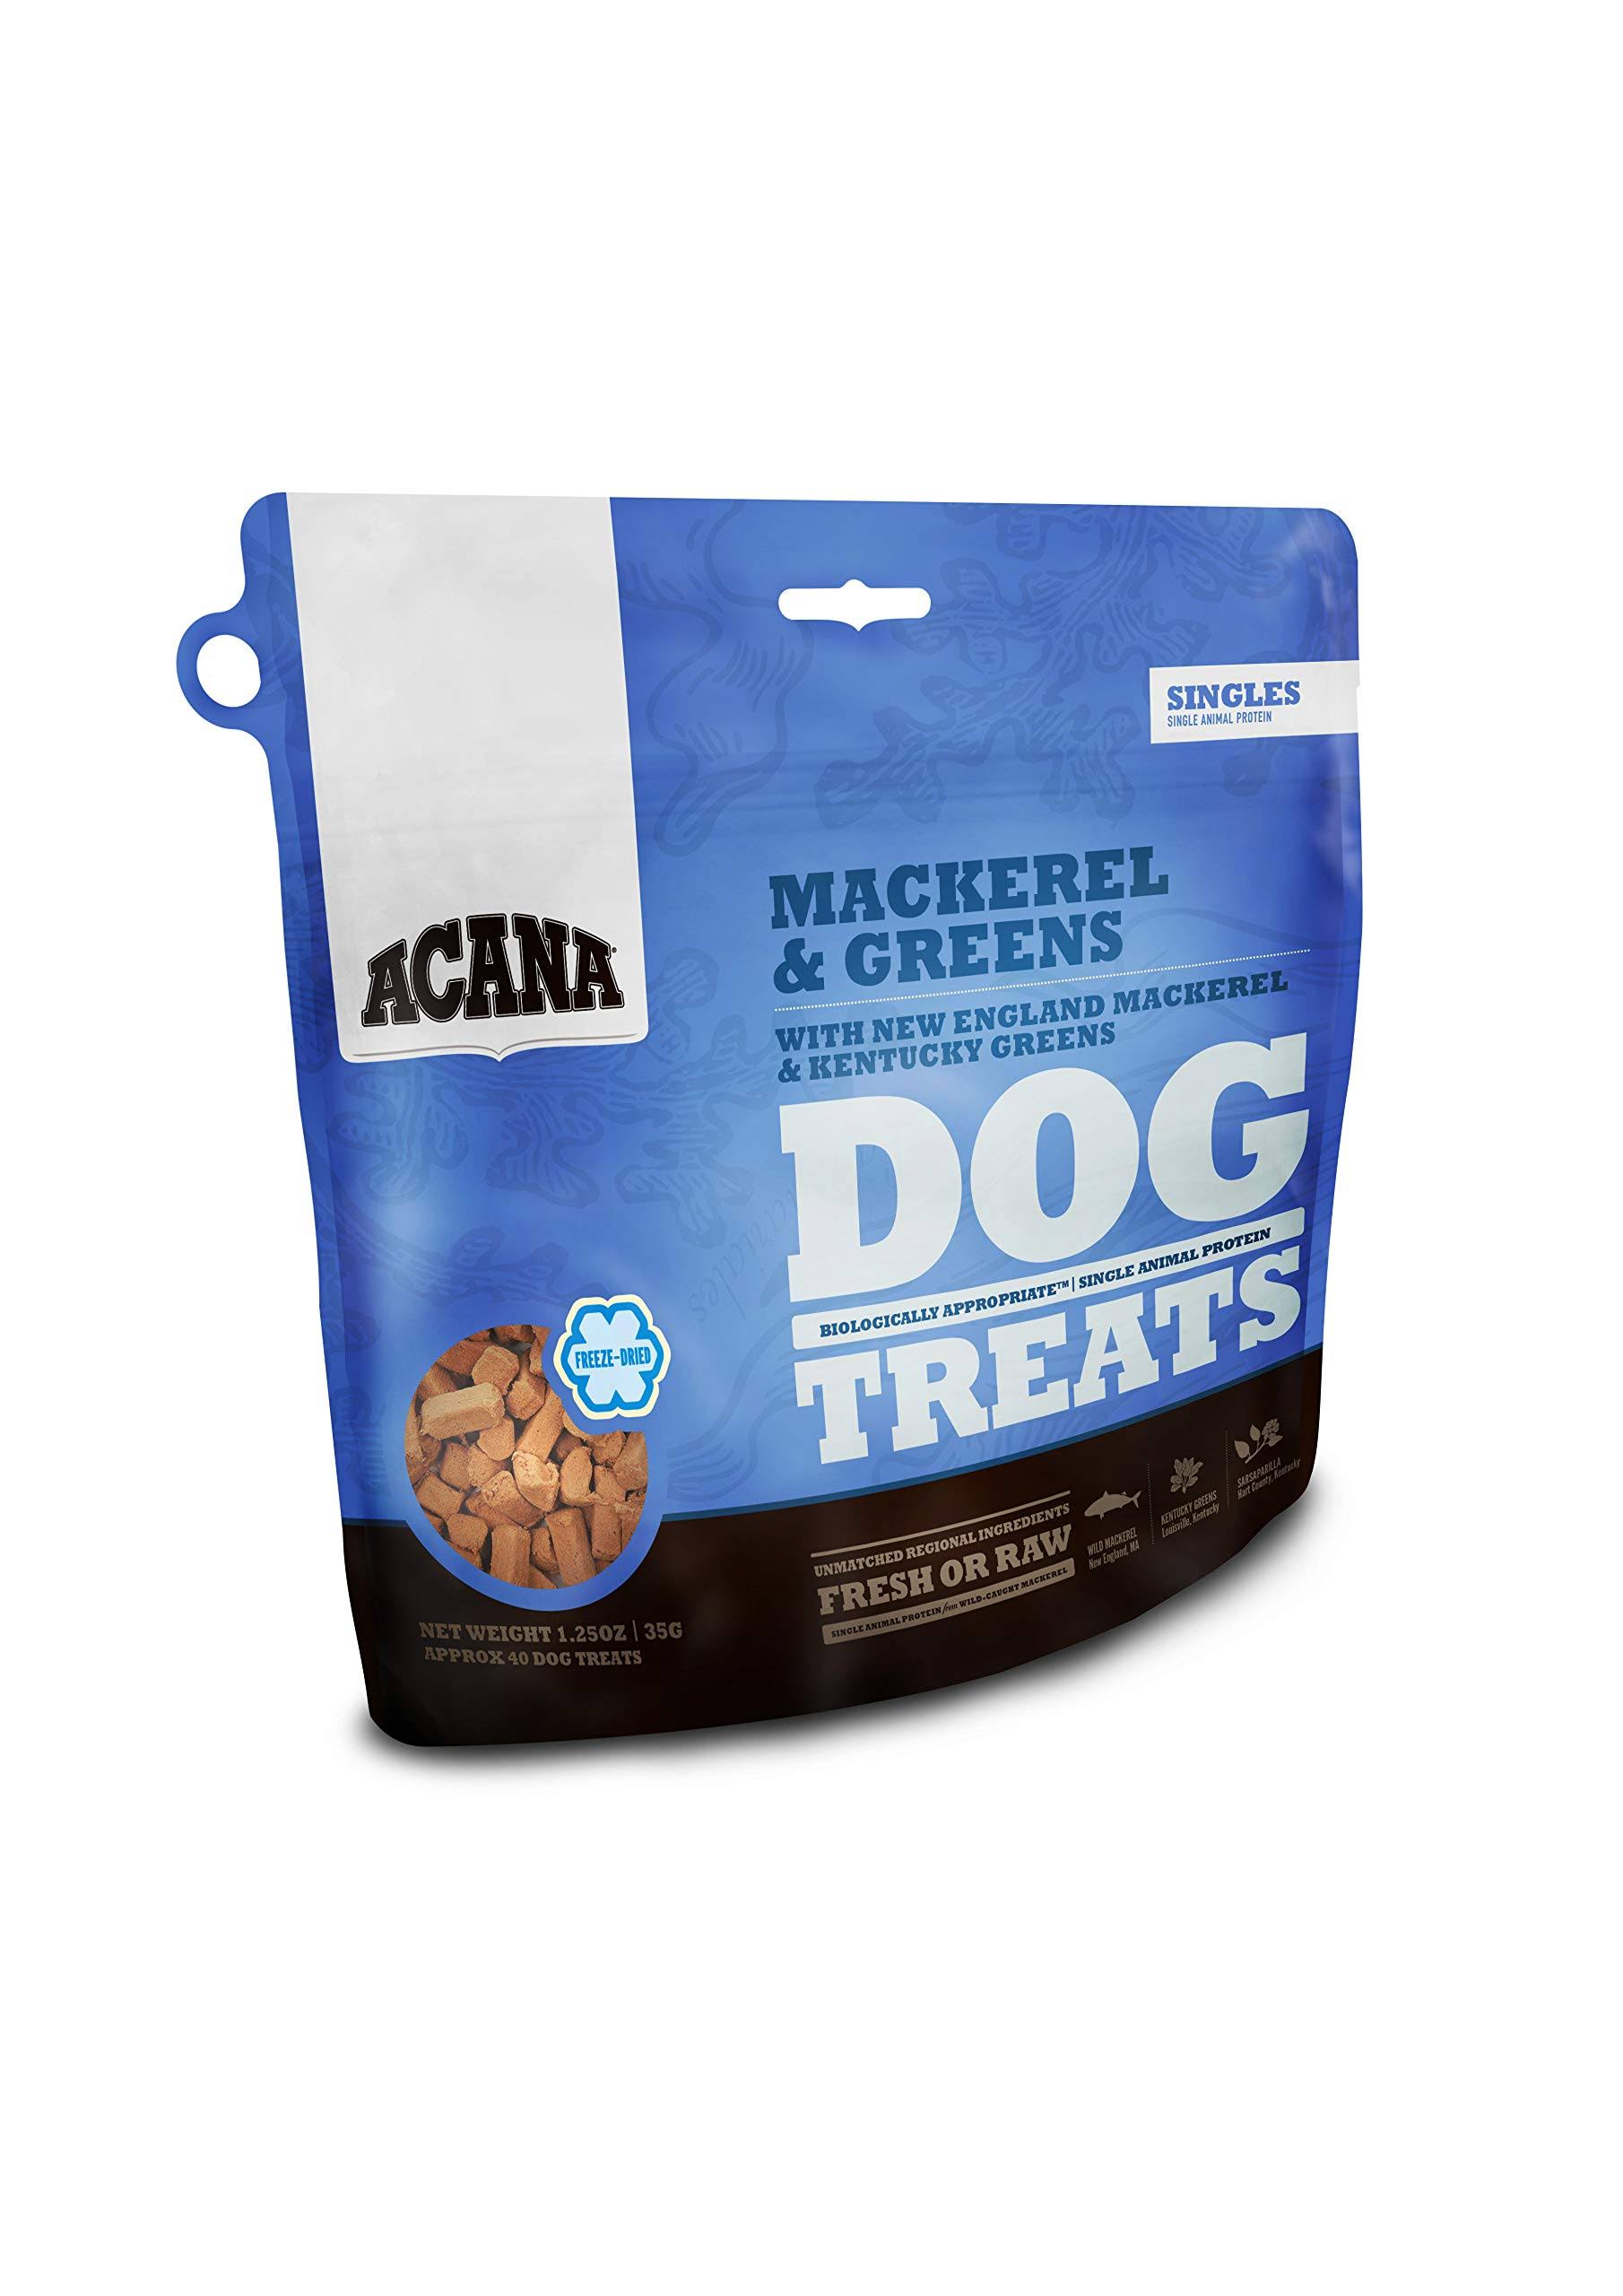 ACANA Singles Mackerel & Greens Dog Treats 1.25 oz.